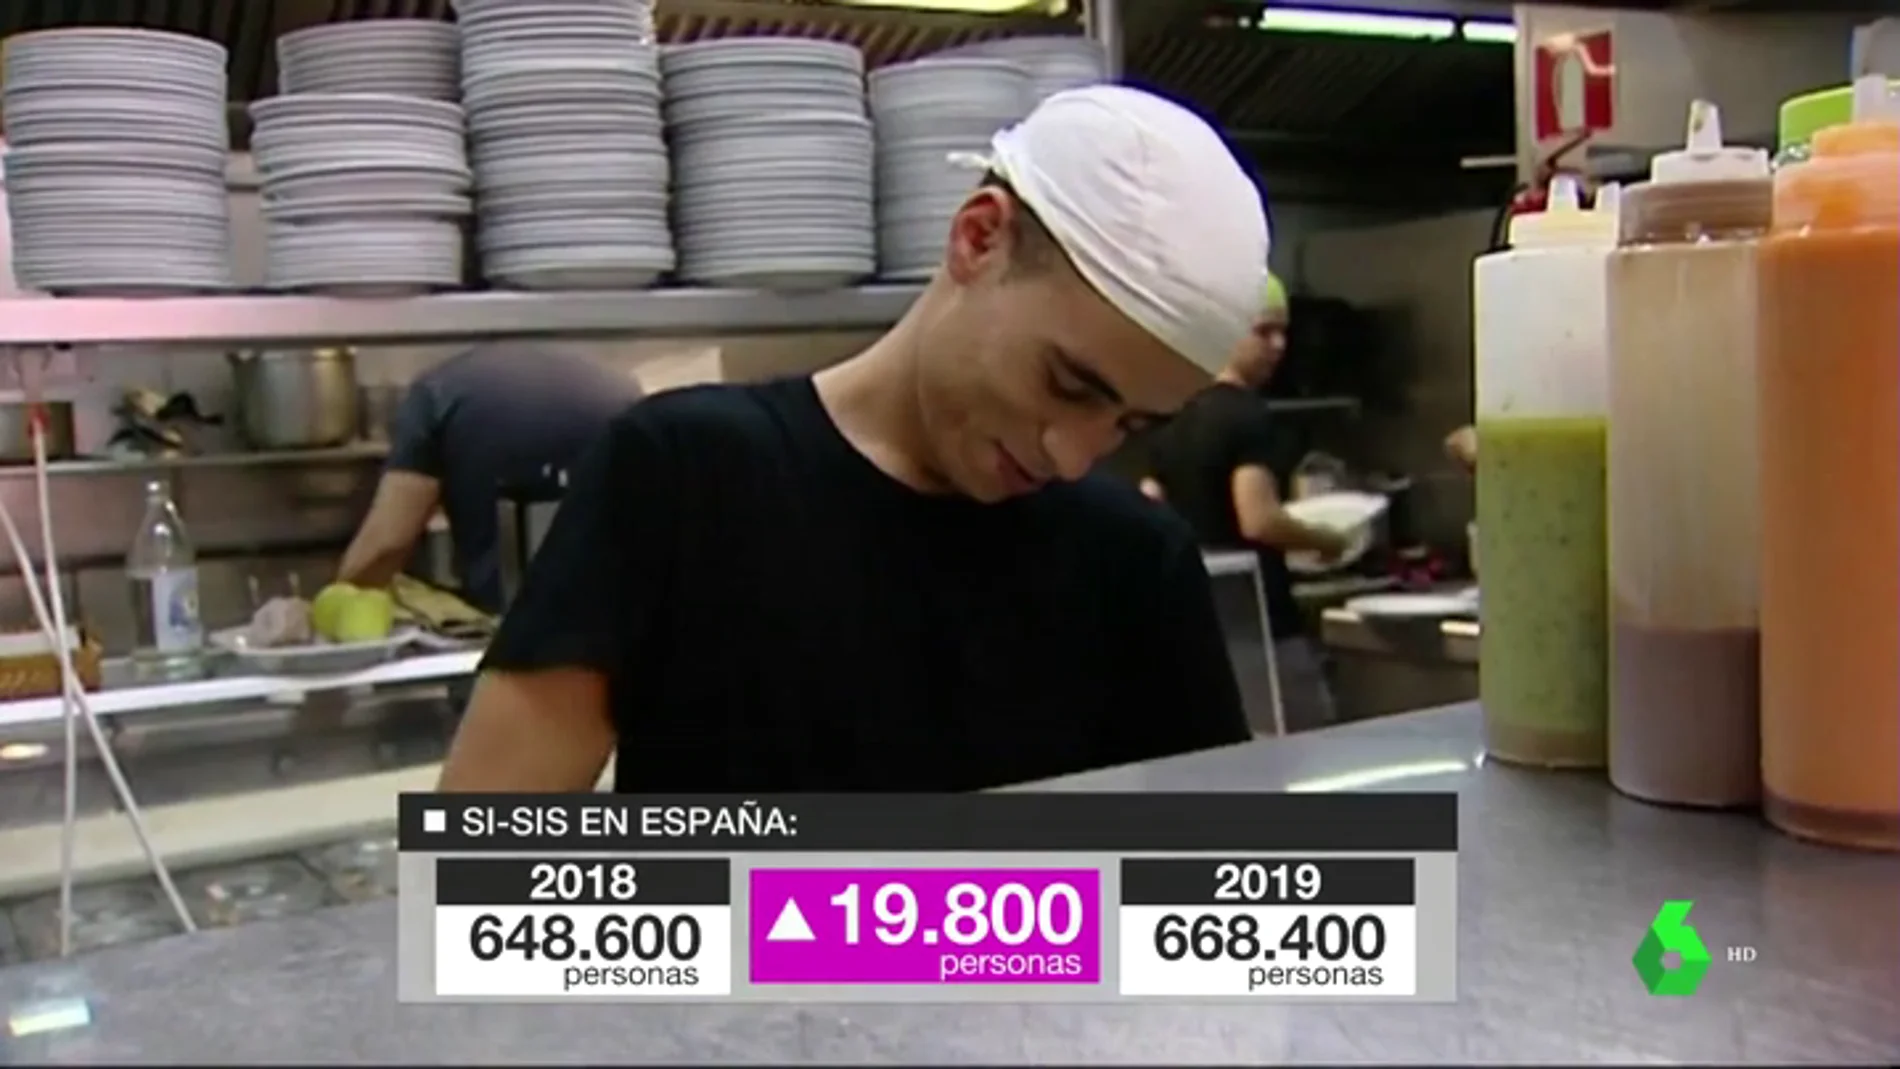 Los 'sisis' sustituyen a los 'ninis': en España ya hay 668.400 personas que estudian y trabajan